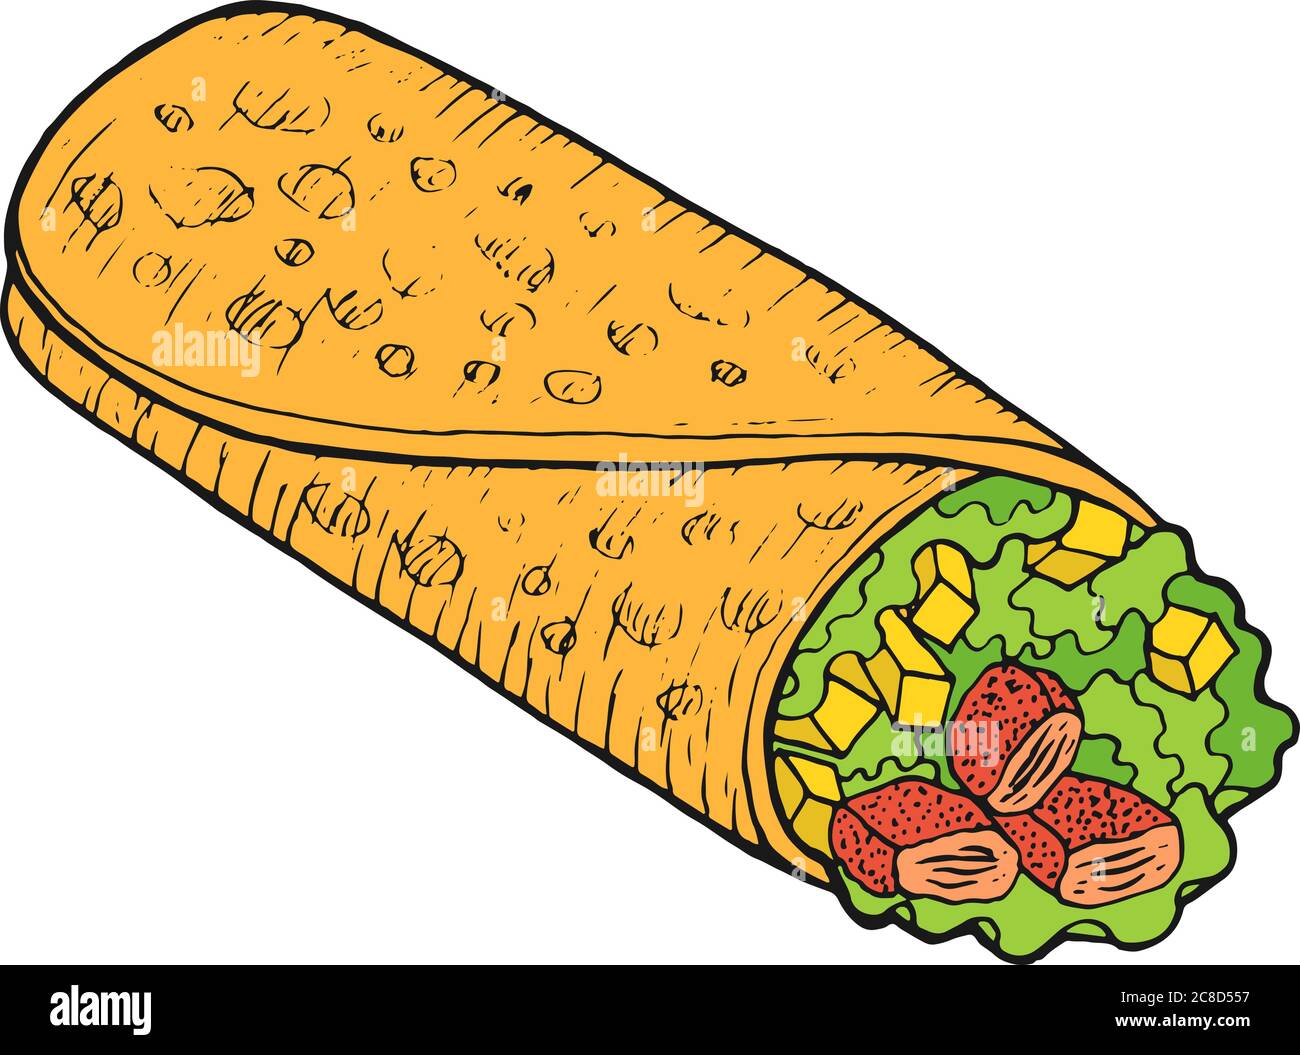 Burrito de cuisine mexicaine - croquis coloré. Illustrations à l'encre.  Dessin animé à motif de caniche graphique illustration vectorielle Image  Vectorielle Stock - Alamy